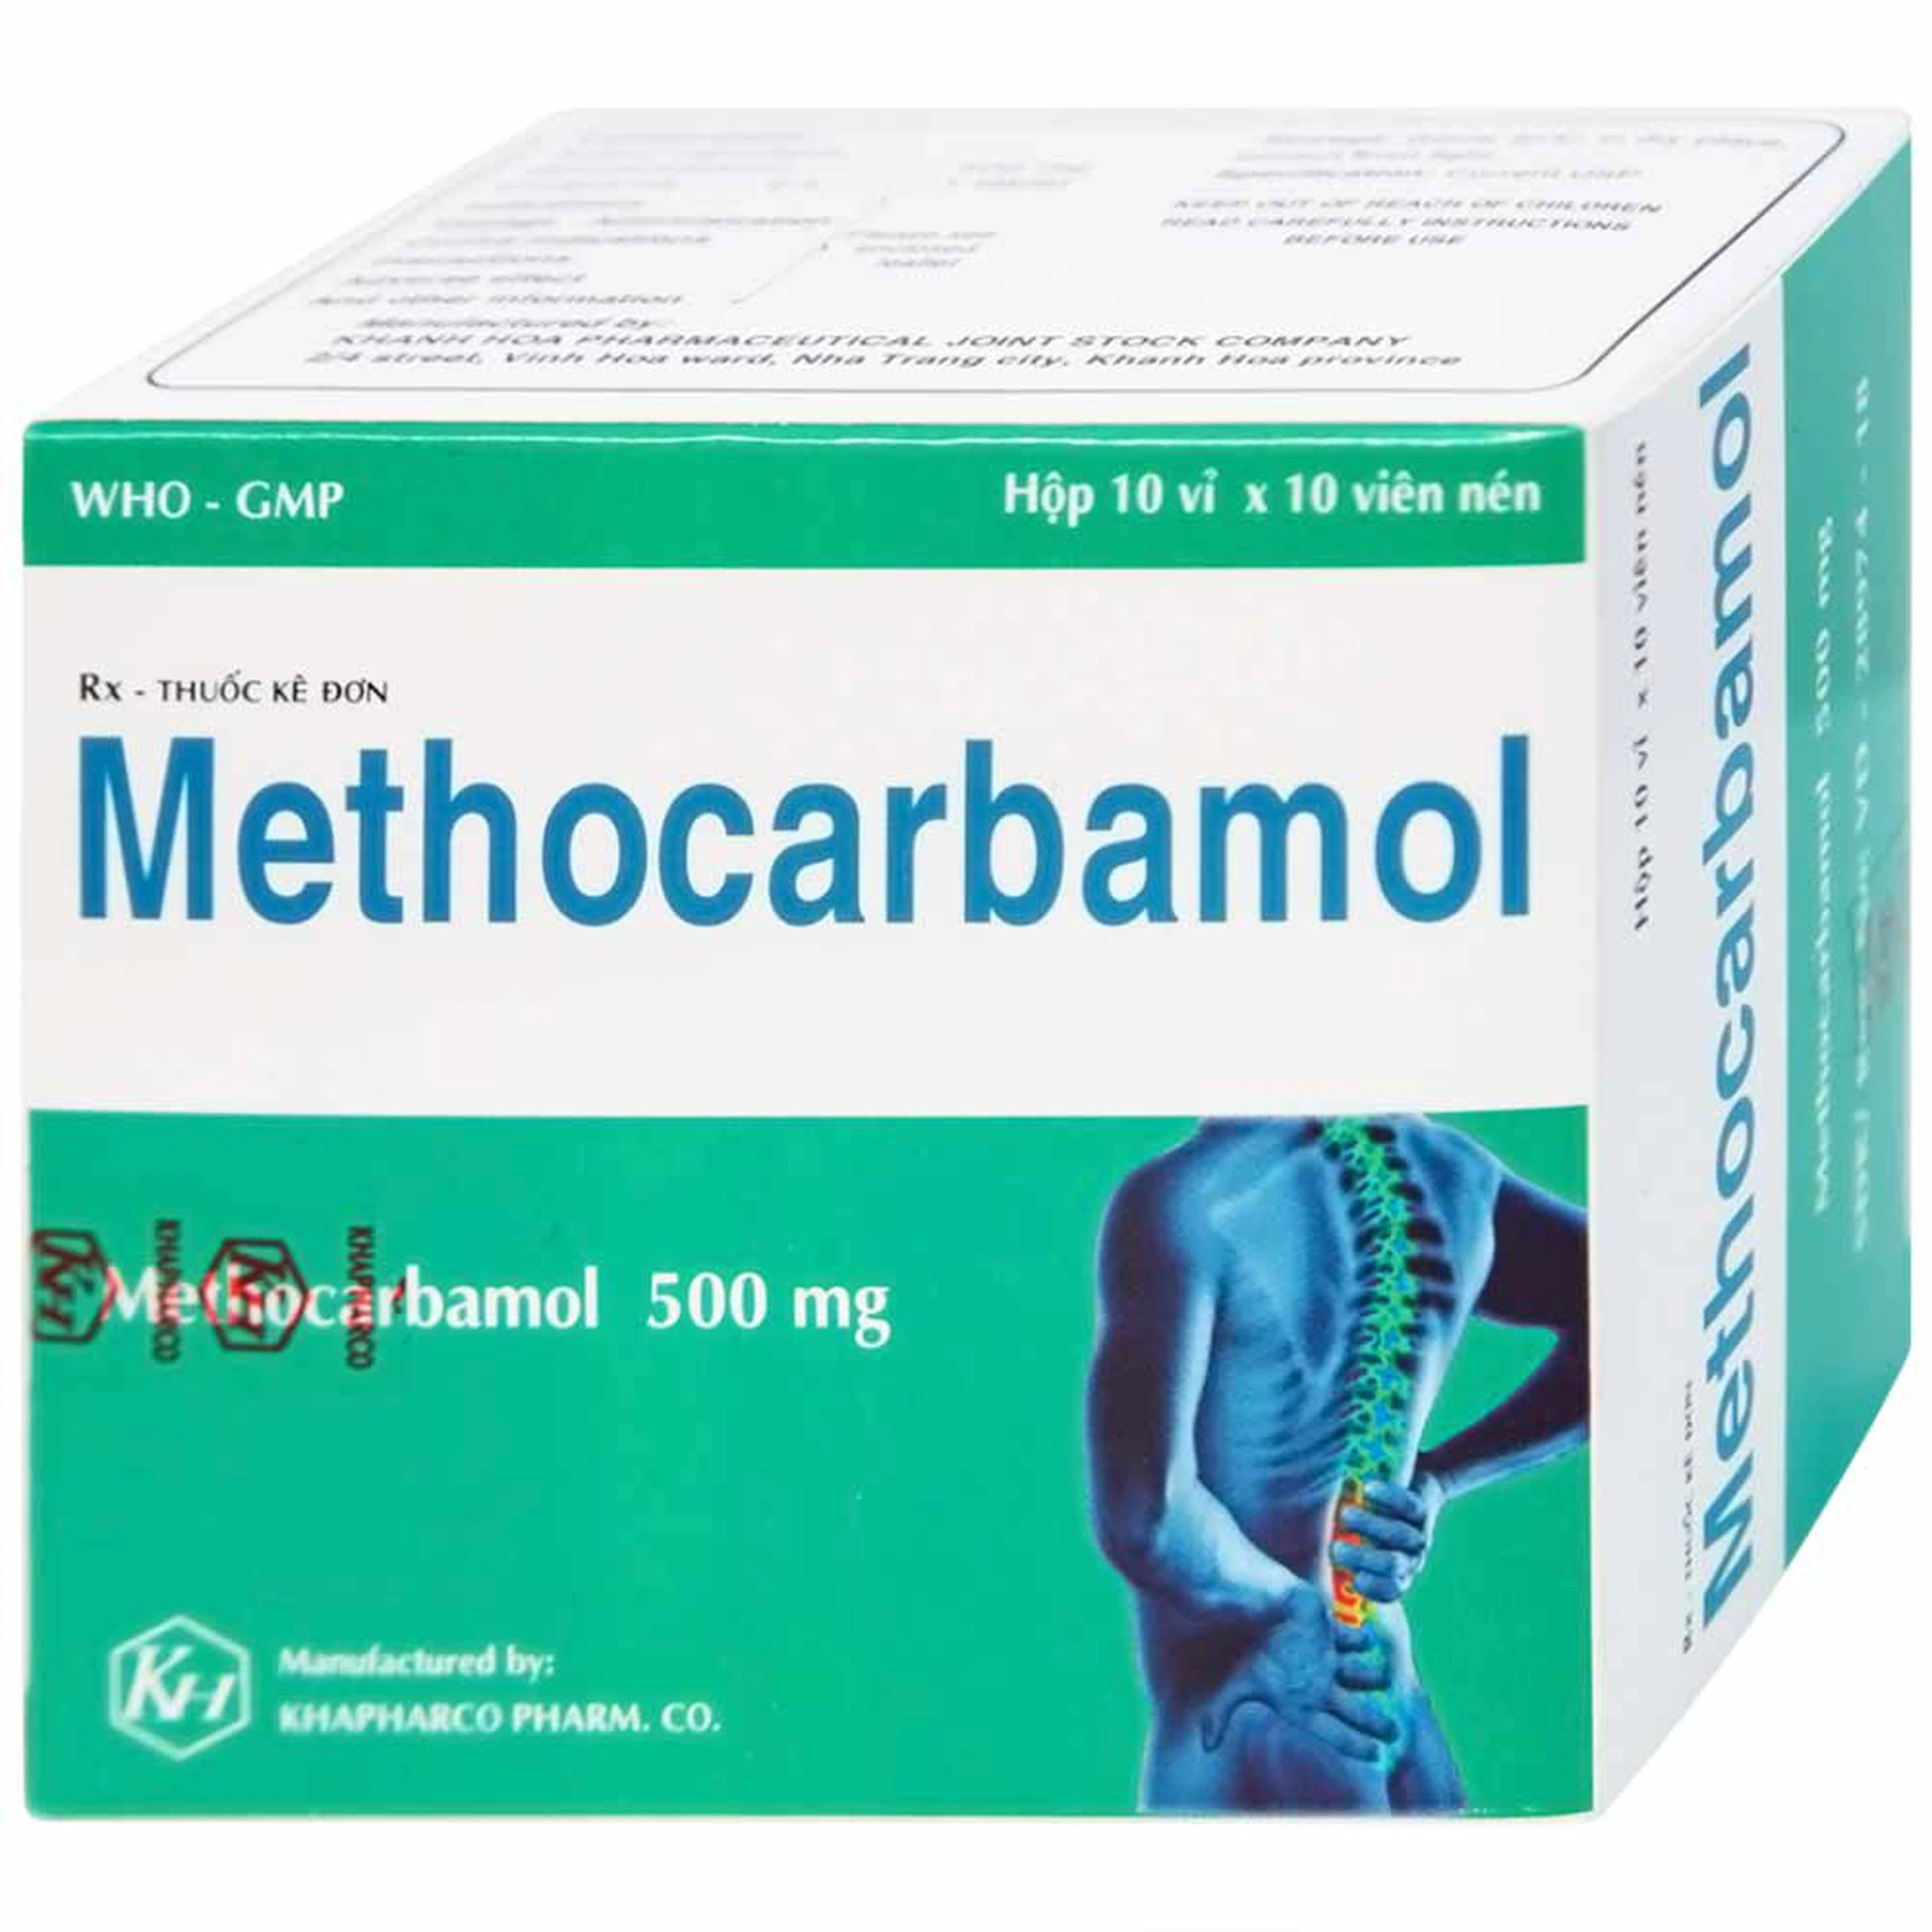 Viên nén Methocarbamol 500mg Khapharco điều trị ngắn hạn cơn đau, co thắt cơ, bong gân (10 vỉ x 10 viên)